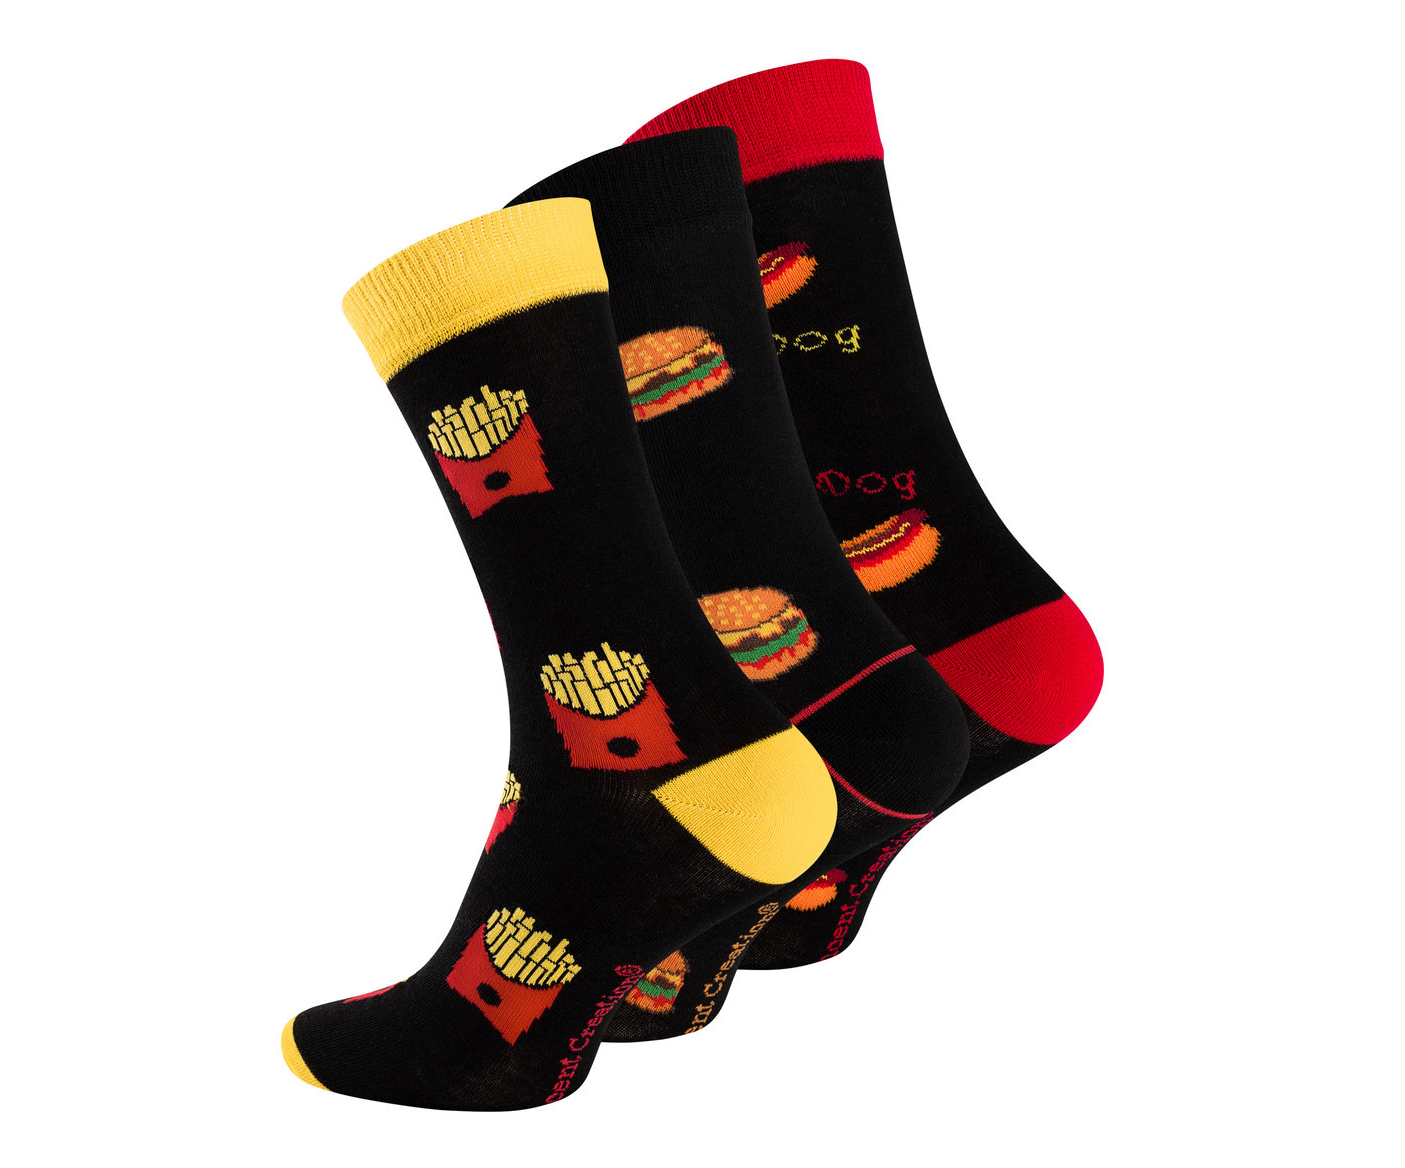 Bild von lustigen Fastfood-Socken, die verschiedene köstliche Symbole wie Burger, Pommes und Softdrinks abbilden – perfekte Accessoires für einen entspannten Tag mit einem Hauch von kulinarischem Spaß!